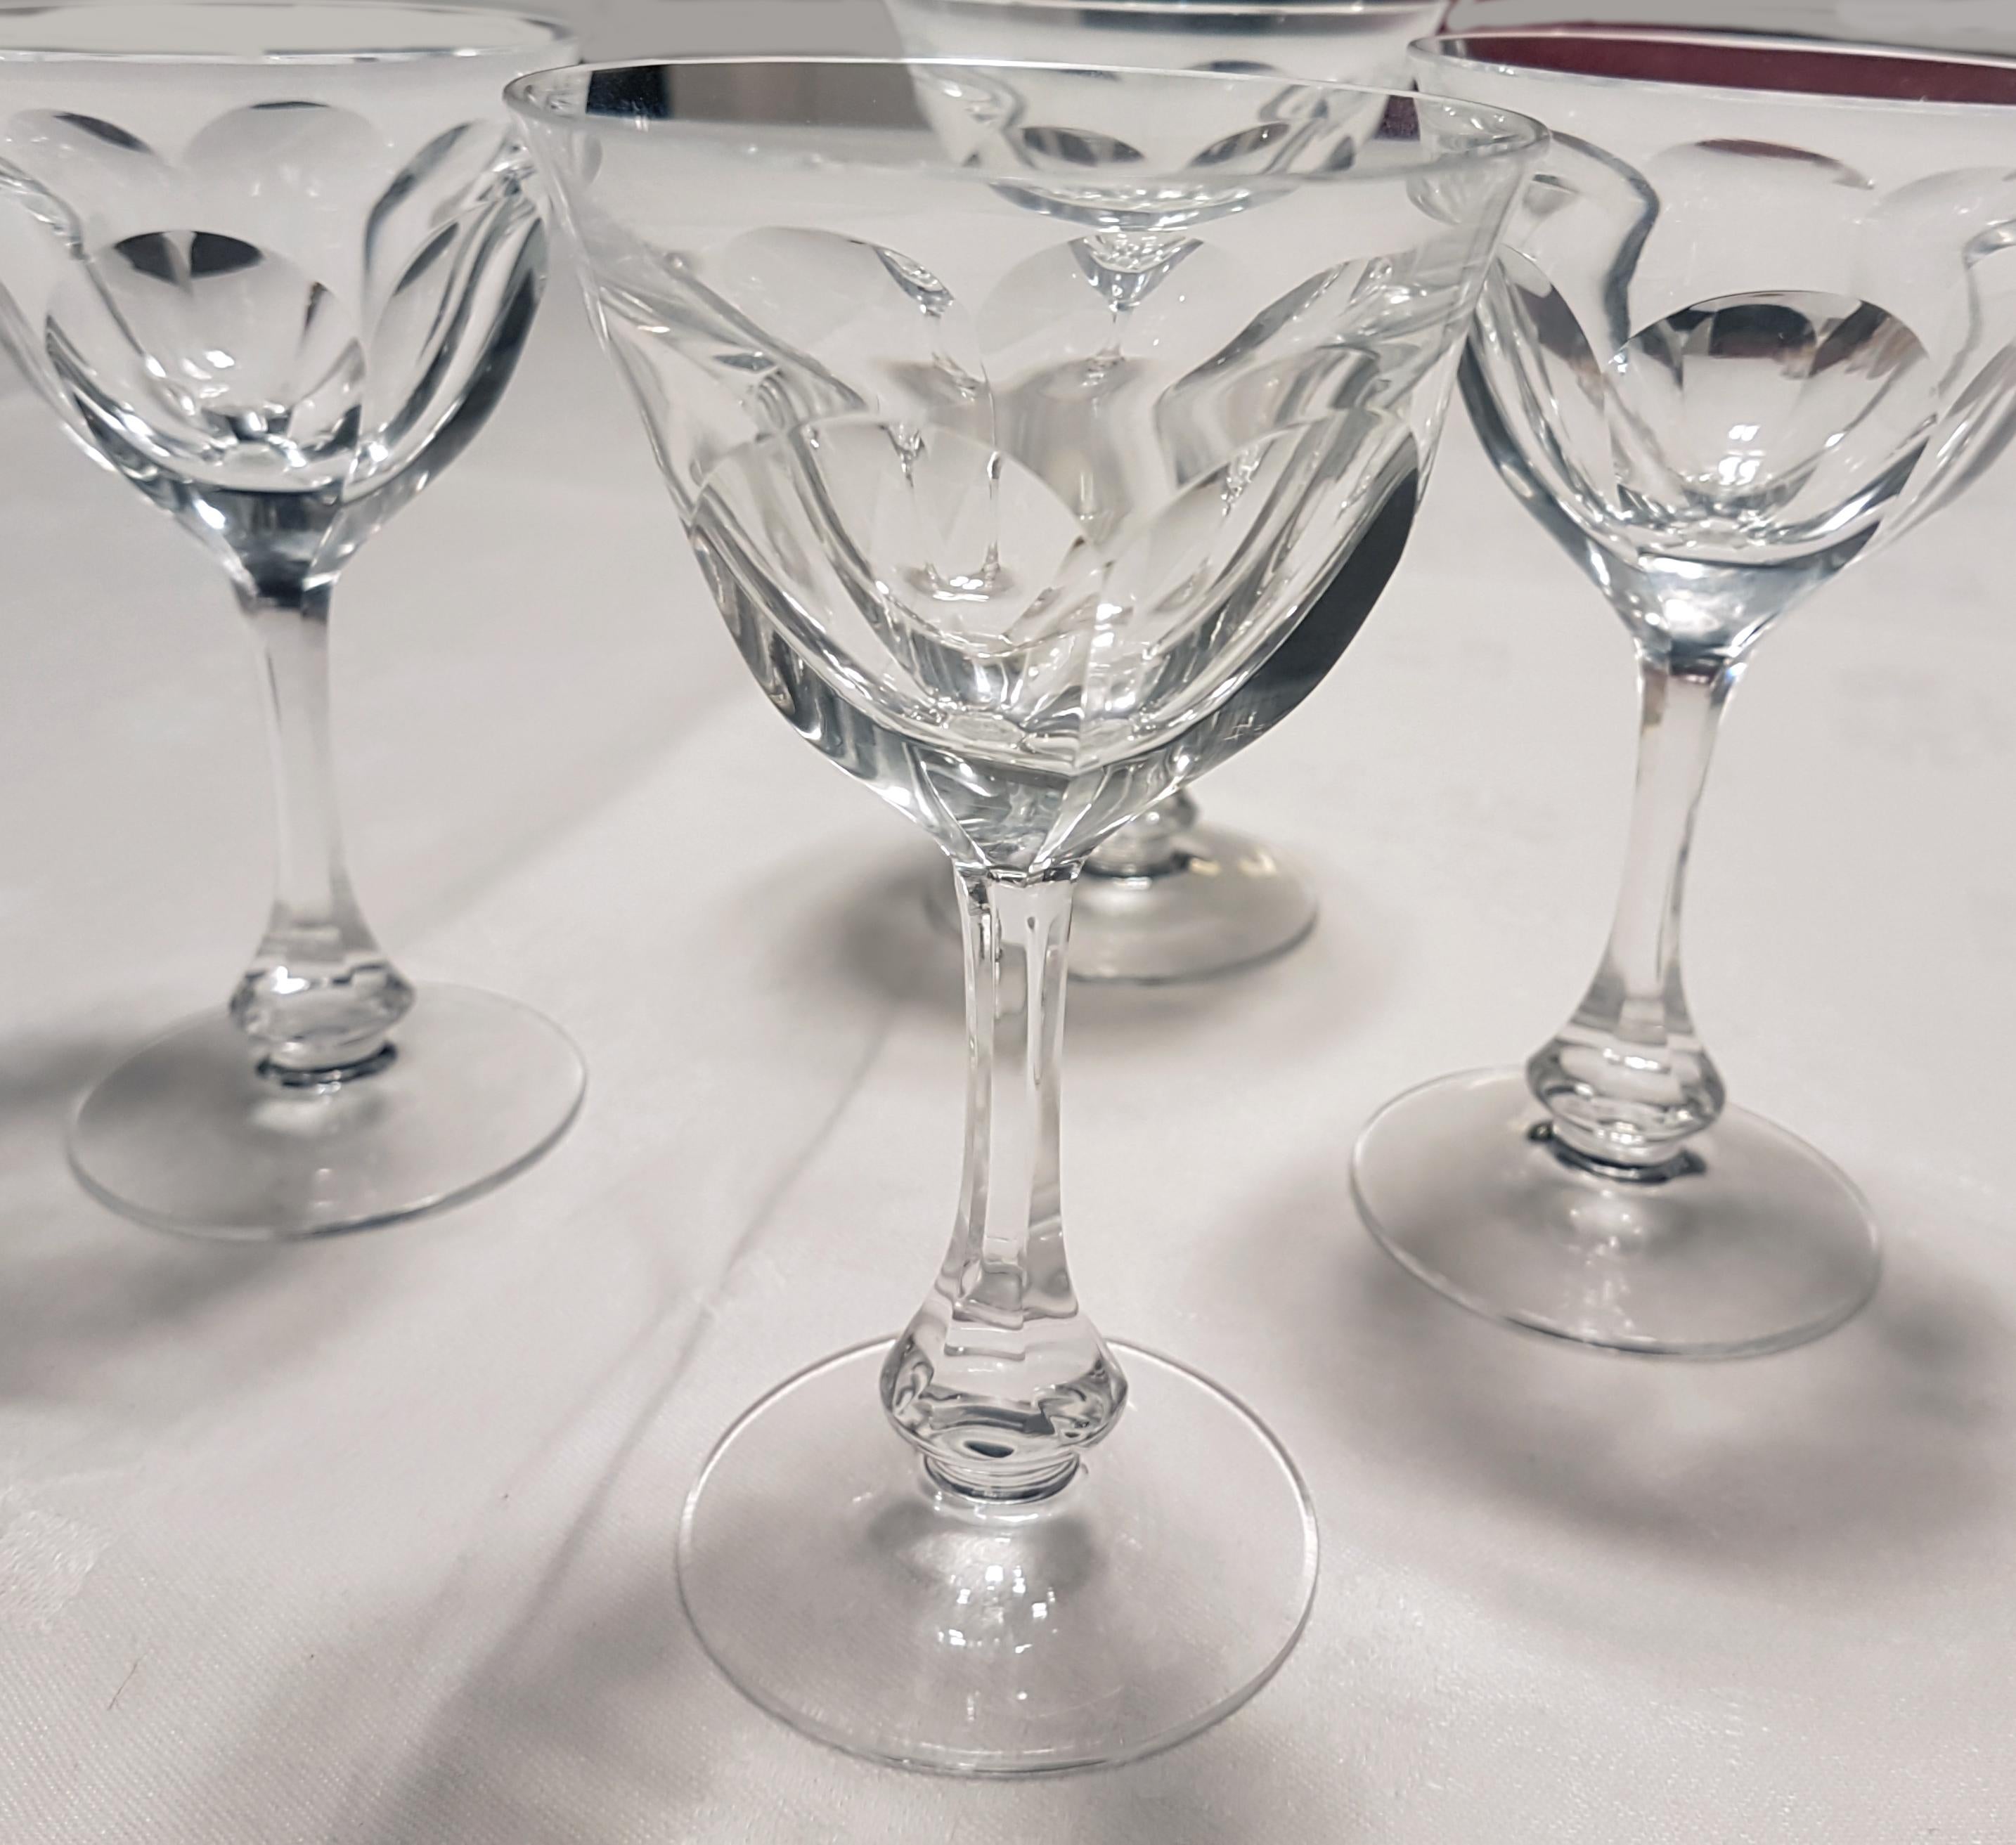 Il s'agit de 4 verres à liqueur ou petits verres à vin fabriqués en cristal soufflé à la main par Moser dans la coupe toujours populaire du verre Lady Hamilton.

Ce motif est un exemple de la coupe 